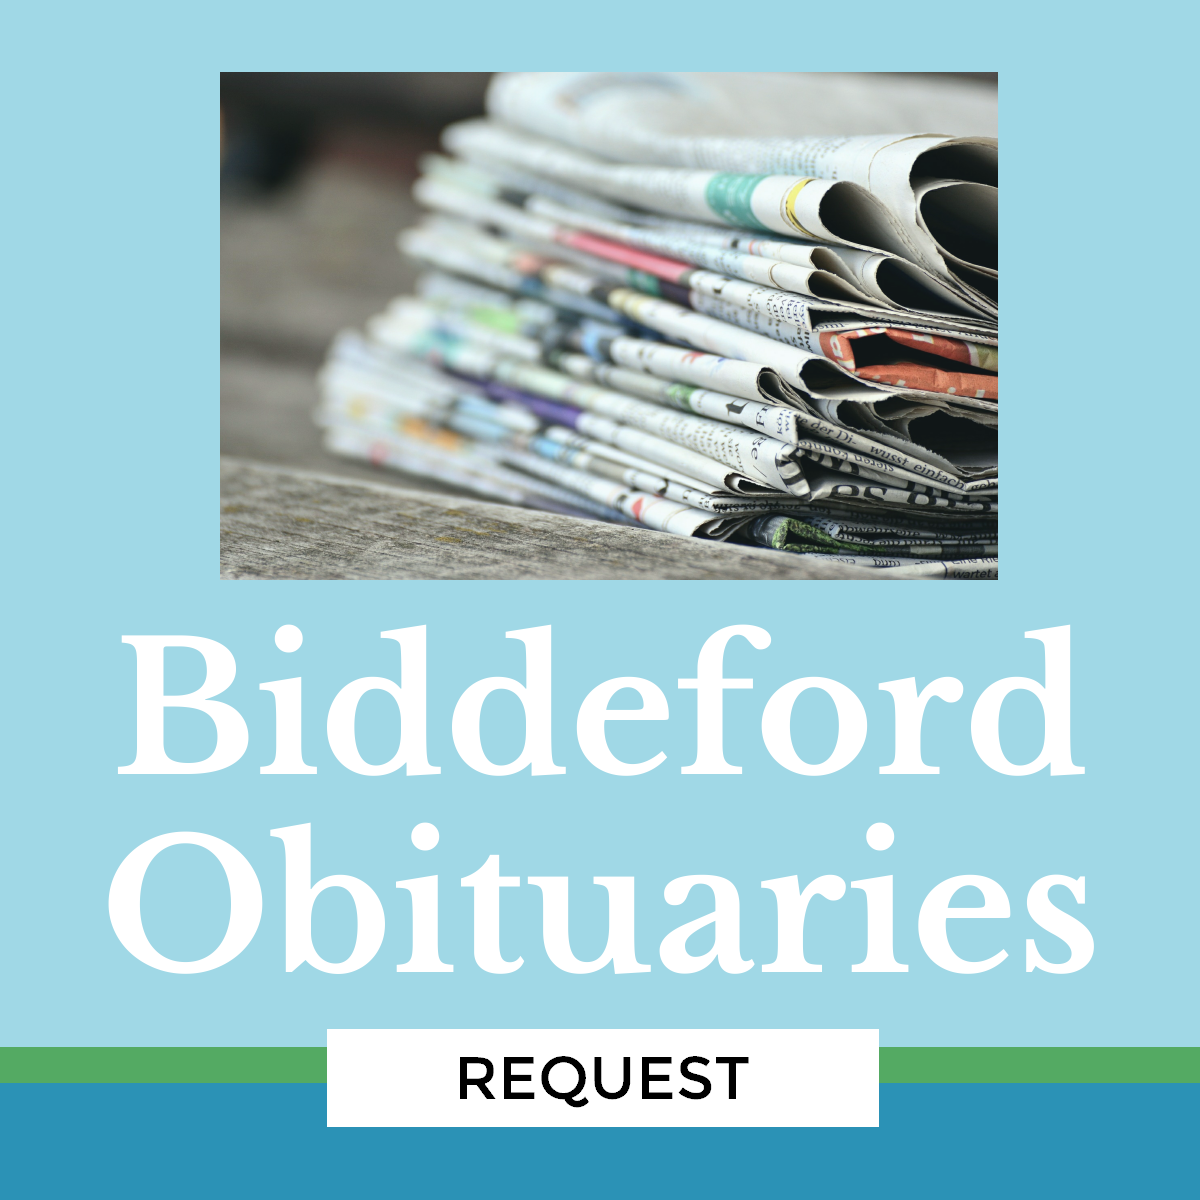 Biddeford obituary request